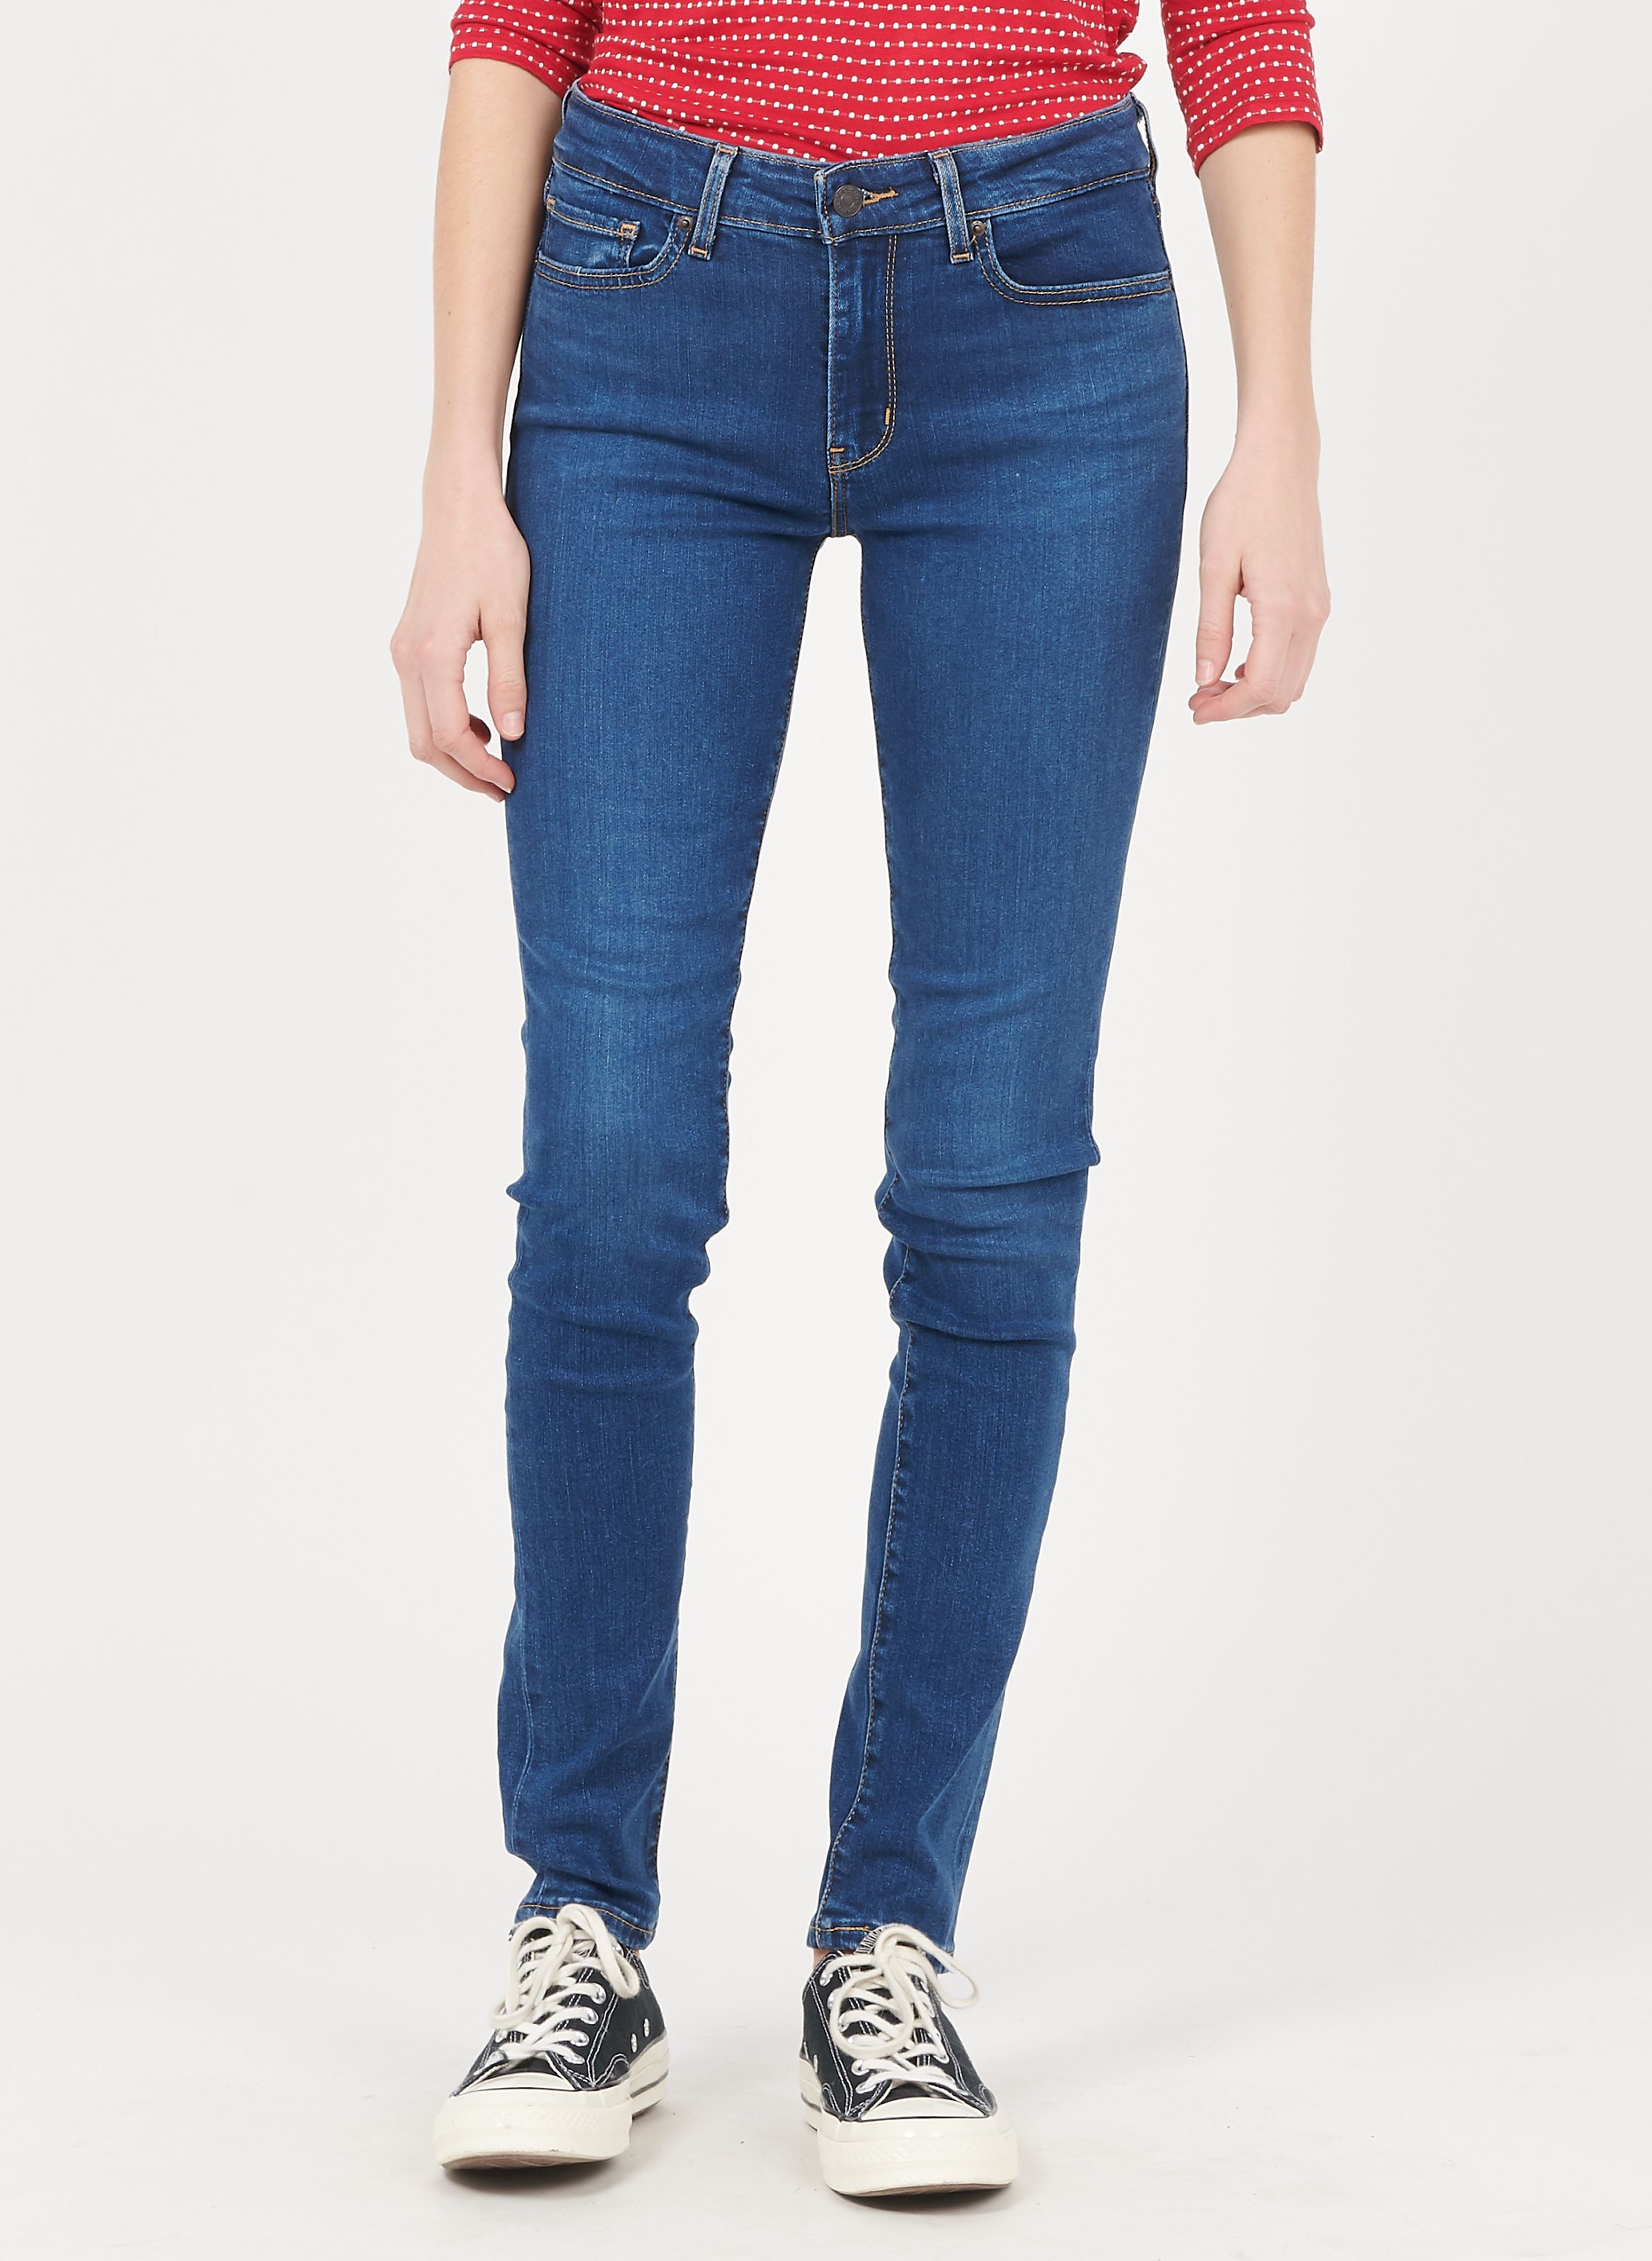 women's levis jeans sale